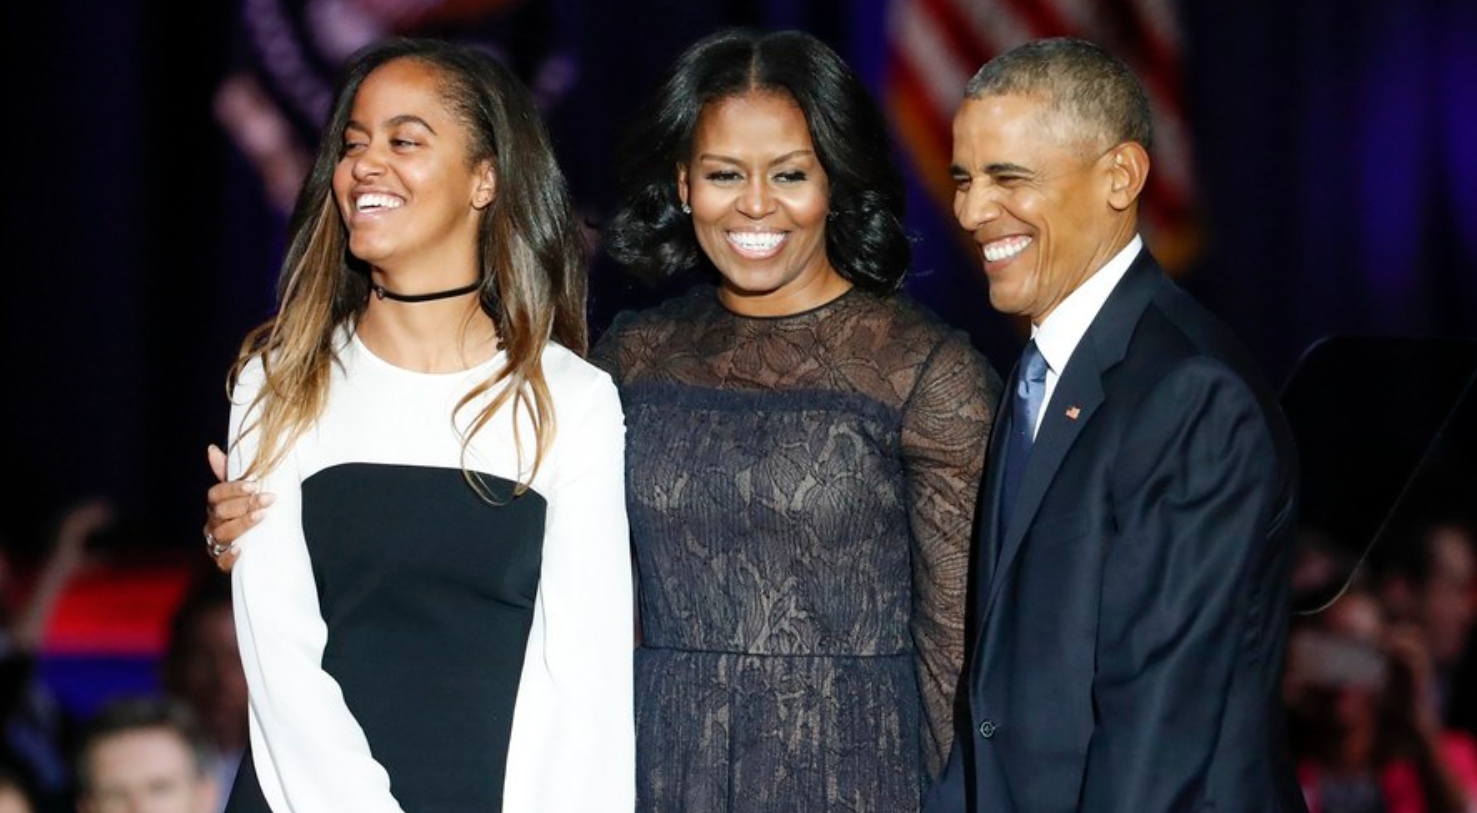 ΗΠΑ: Τα τρυφερά «χρόνια πολλά» των Μισέλ και Μπαράκ Ομπάμα στην κόρη τους για τα γενέθλιά της